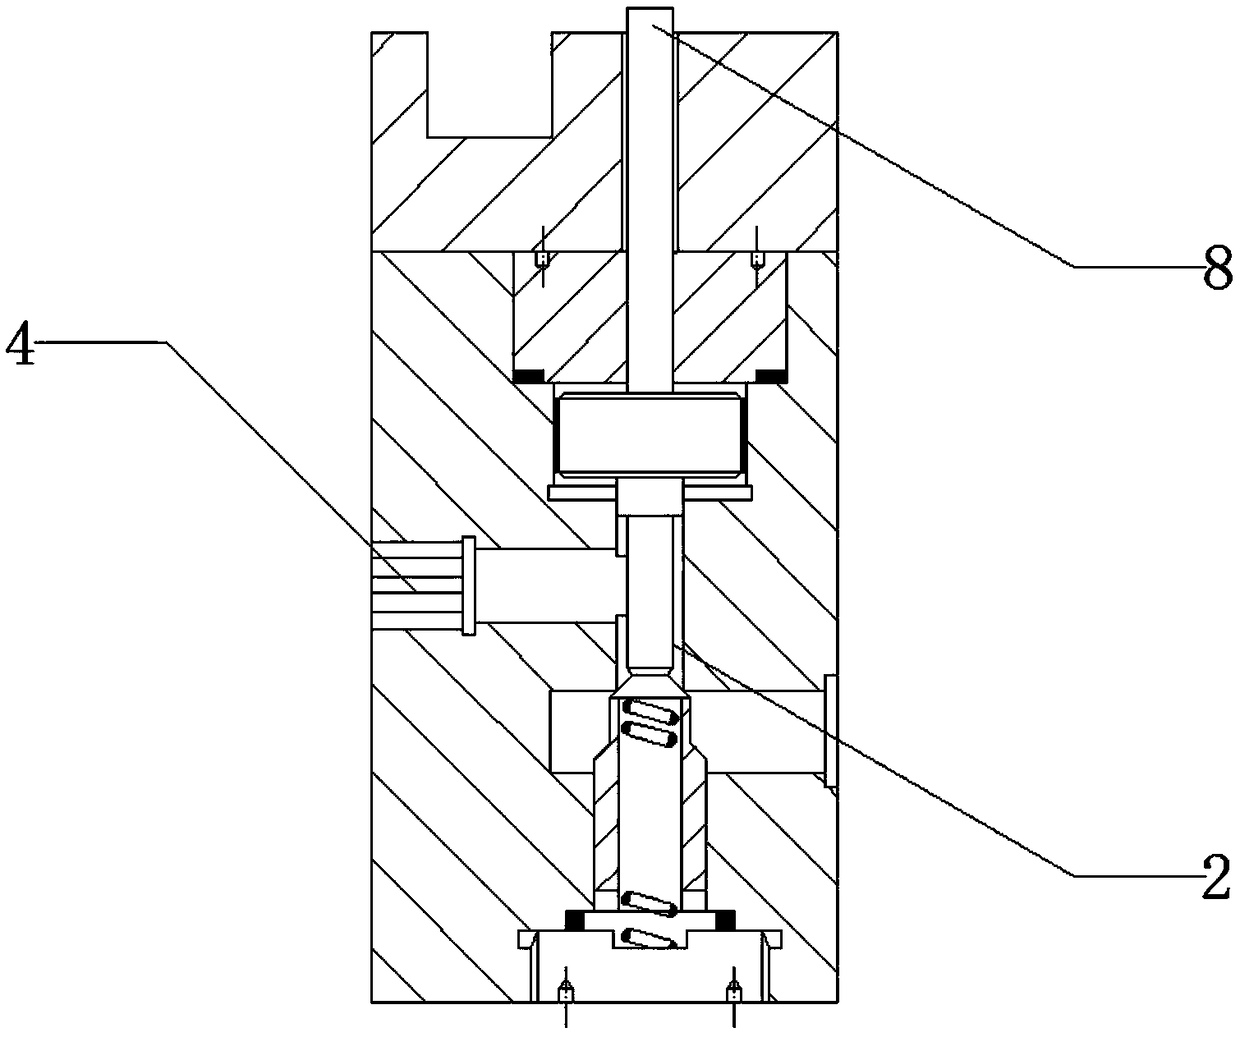 Laser transmission welding system and method